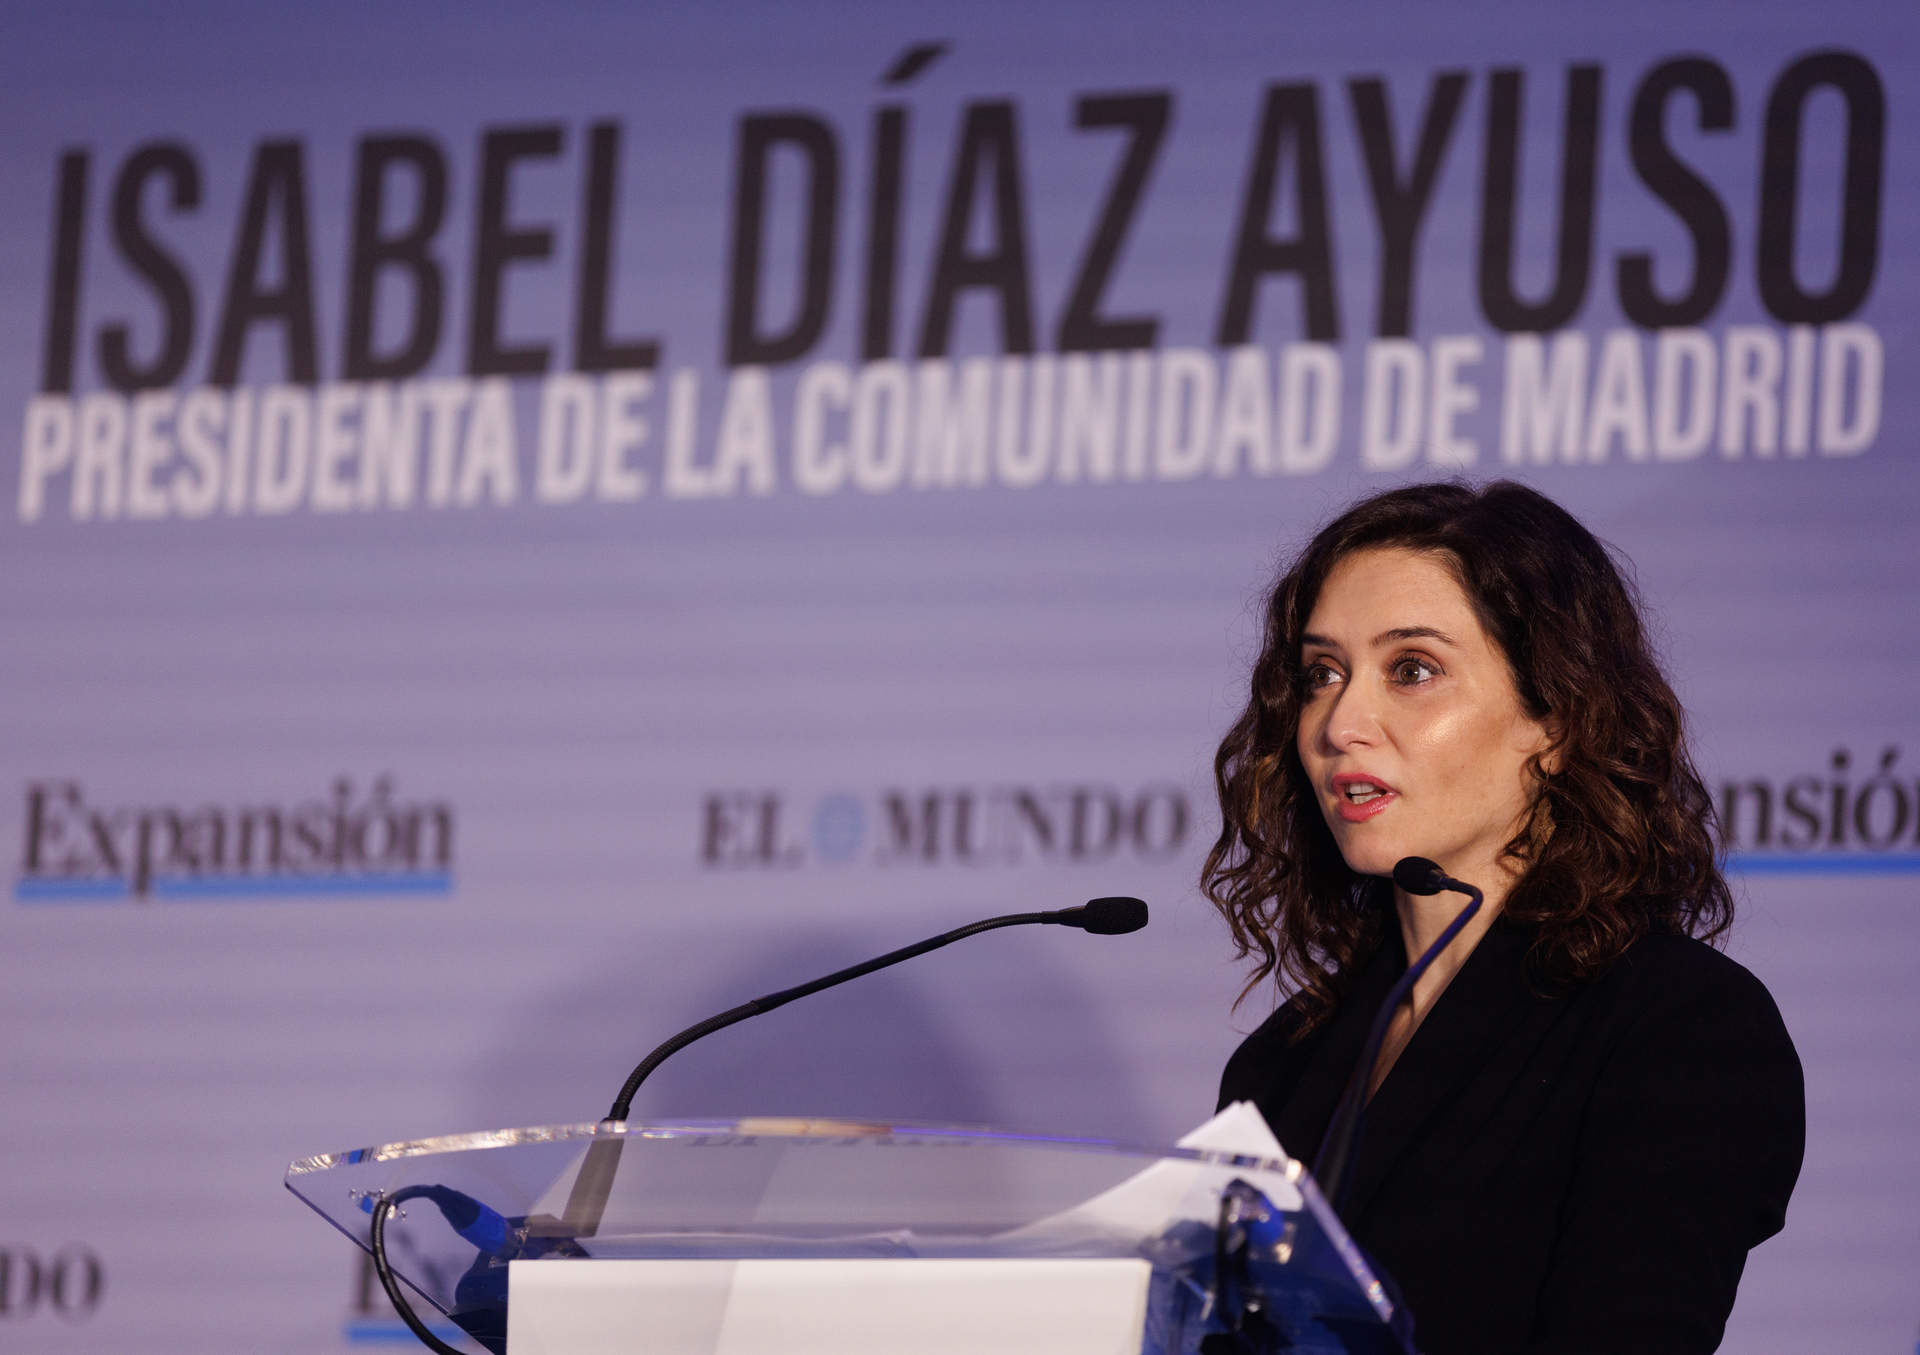 Archivo - La presidenta de la Comunidad de Madrid, Isabel Díaz Ayuso, interviene durante un encuentro informativo organizado por los diarios 'El Mundo' y 'Expansión', en el Hotel The Westin Palace, el pasado 16 de enero, en Madrid.